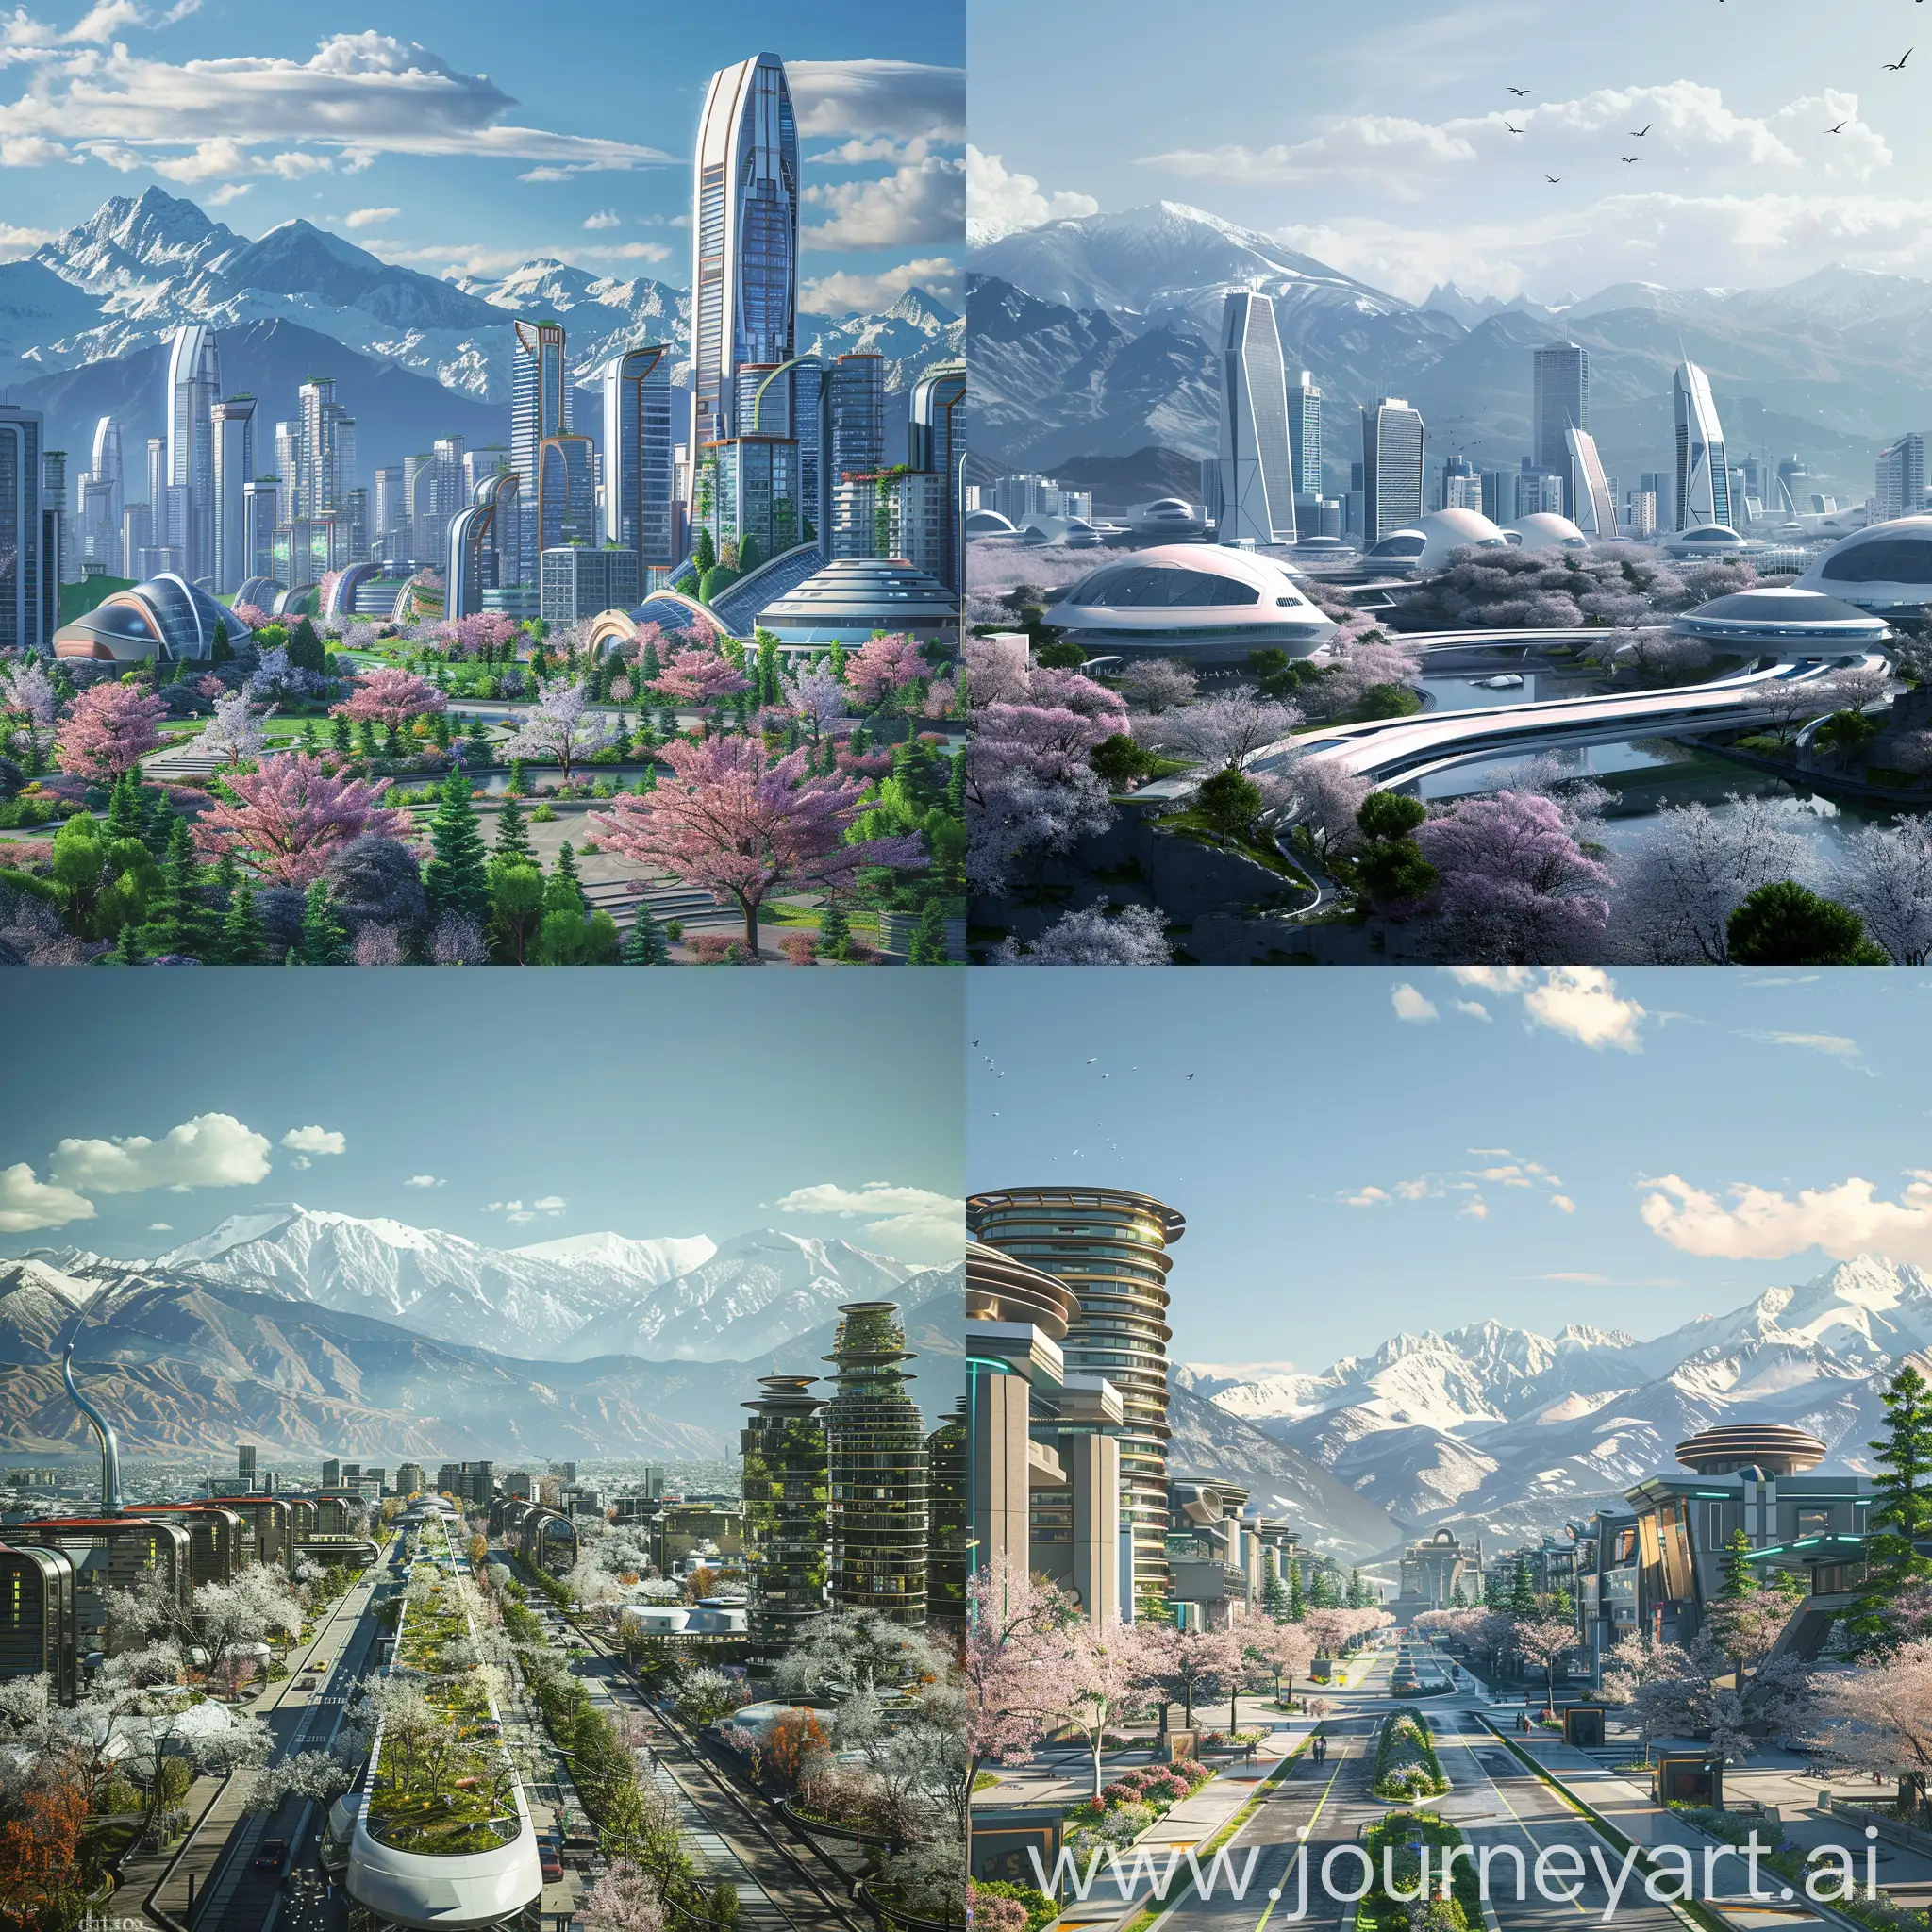 Futuristic-Cityscape-Clean-Architecture-and-Mountain-Backdrop